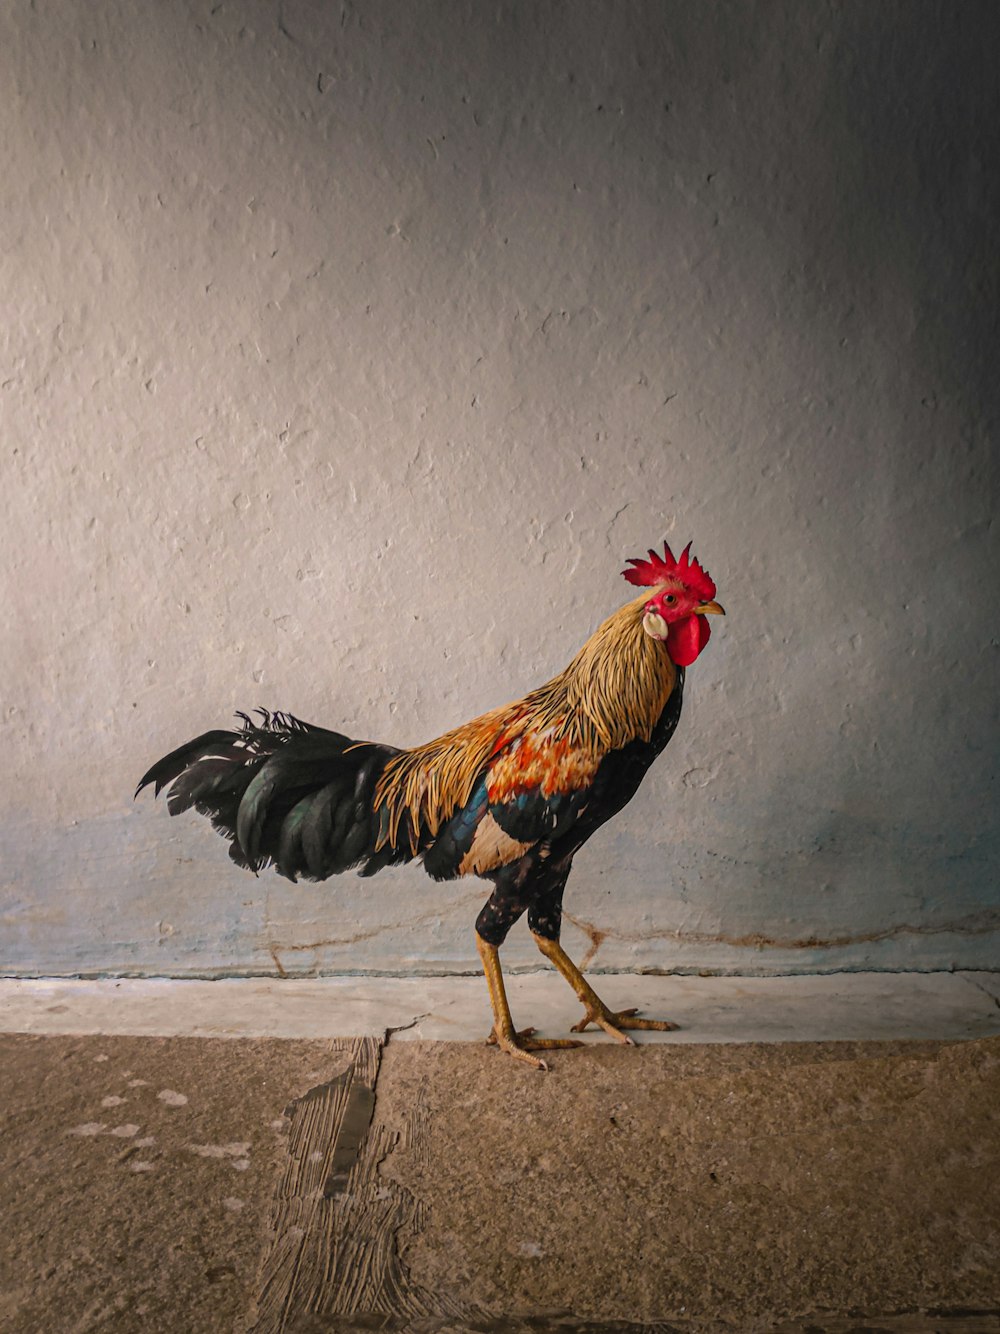 Más de 1500 imágenes de gallos | Descargar imágenes gratis en Unsplash